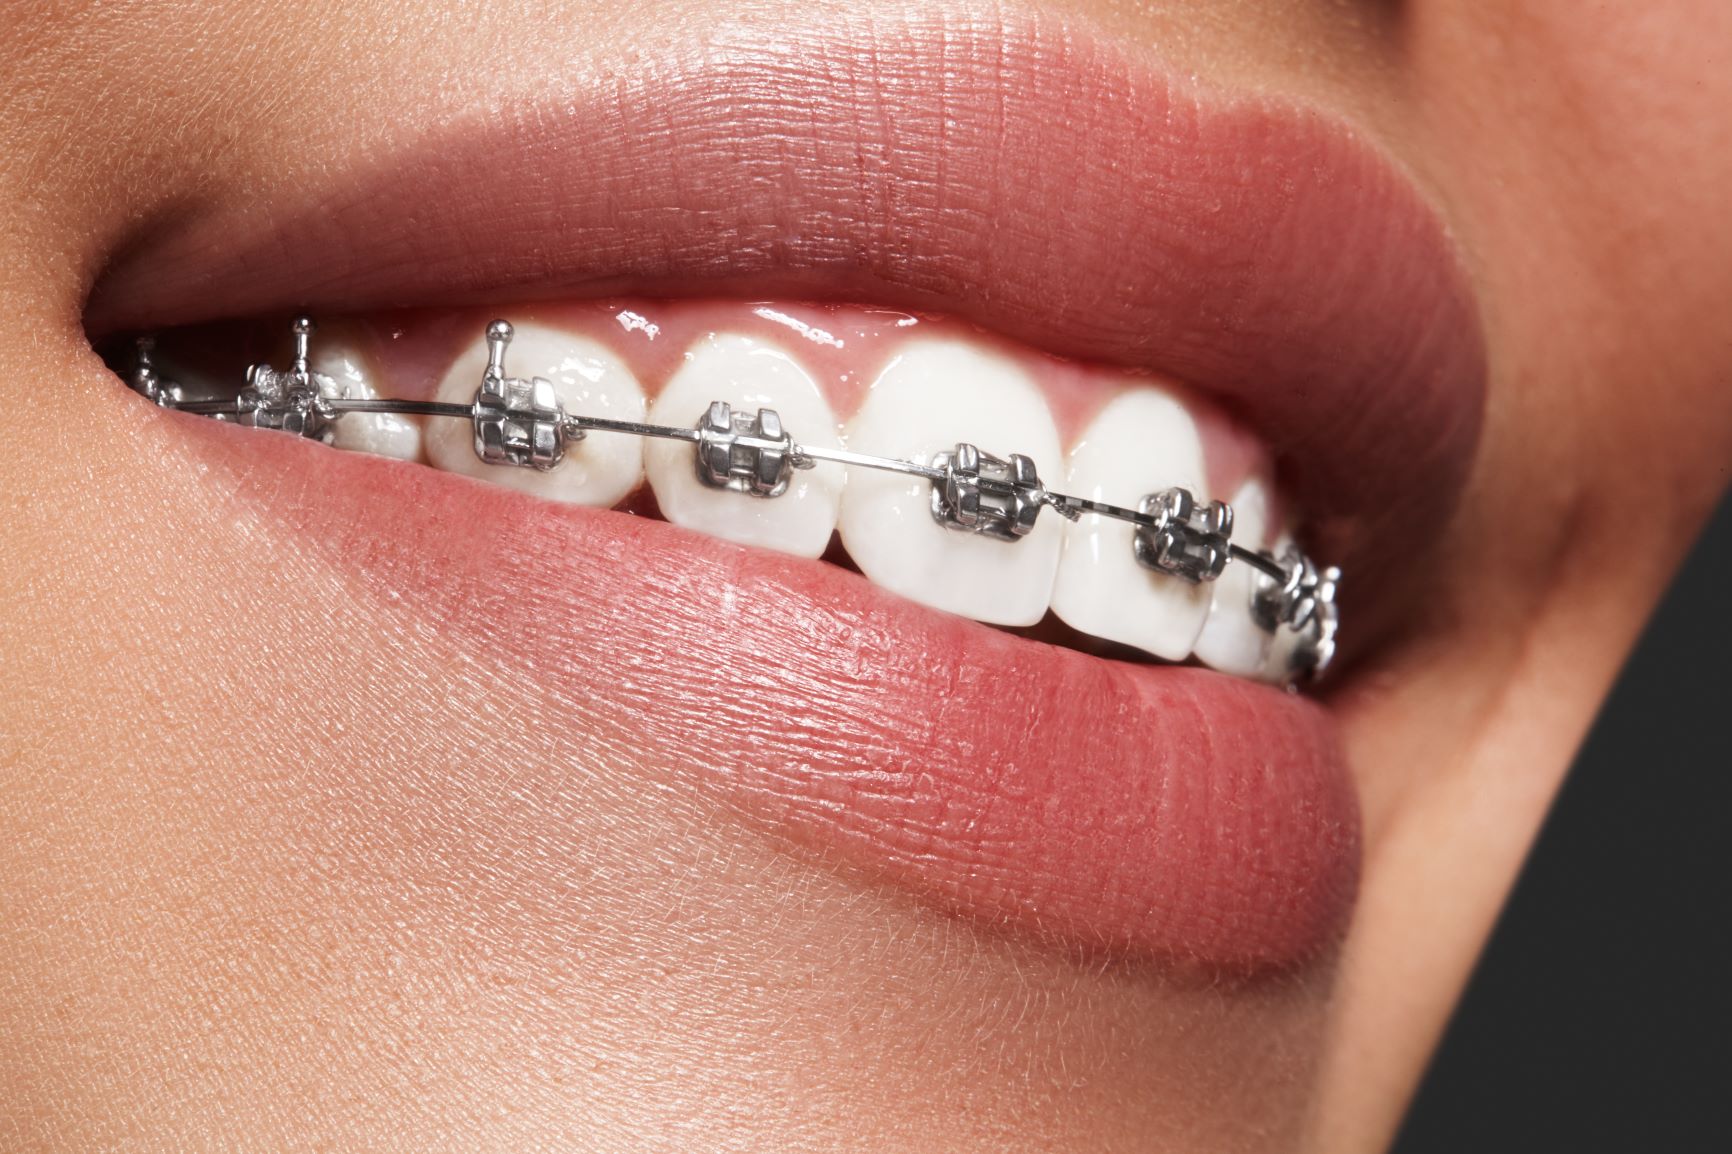 The Smile Space orthodontie - l'appareil dentaire métallique